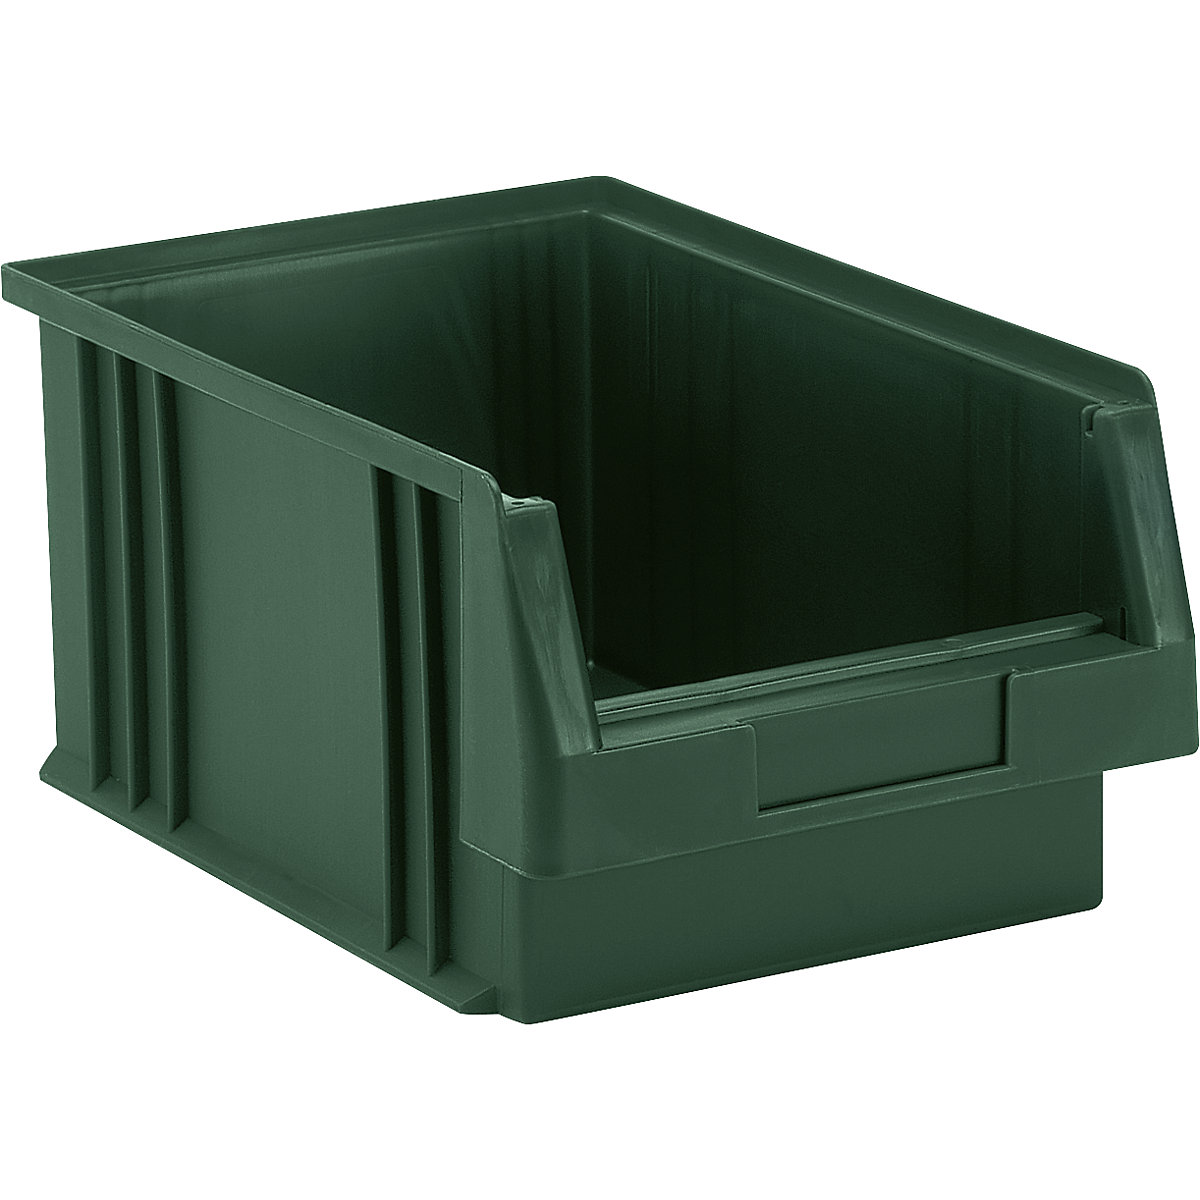 Otwarty pojemnik magazynowy z polipropylenu, poj. 7,4 l, opak. 10 szt., zielony-7